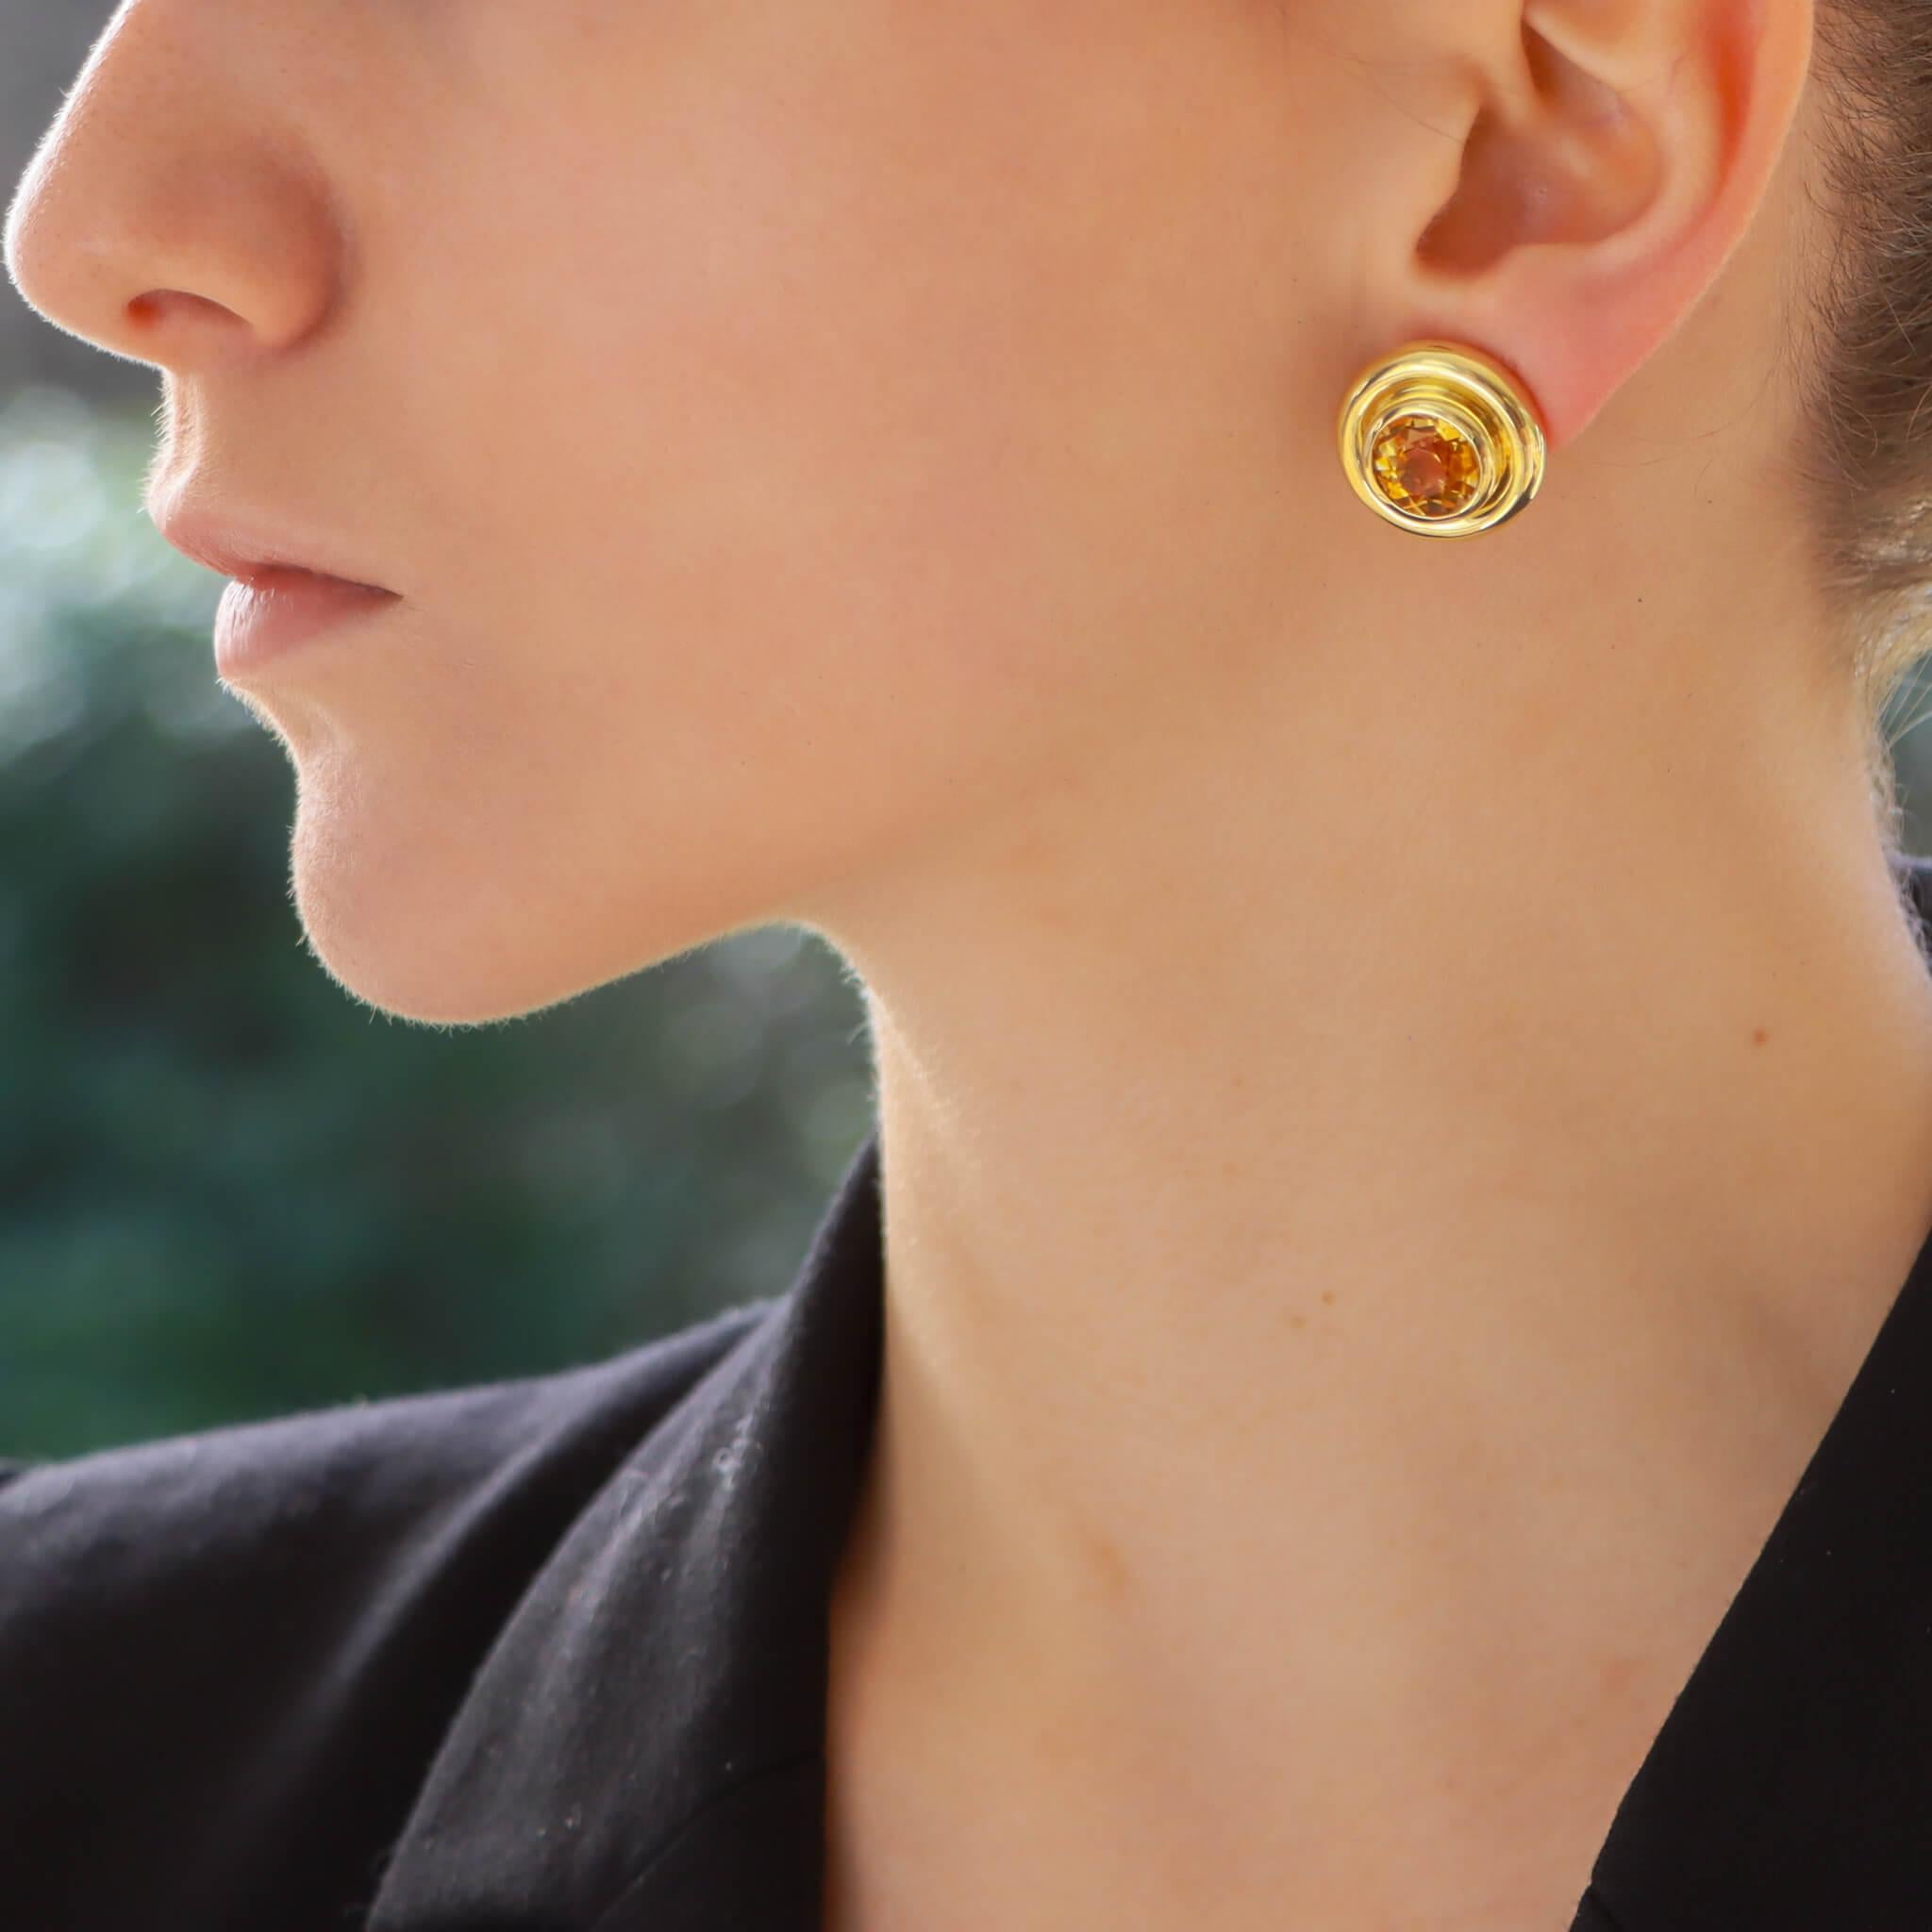 Magnifique paire de boucles d'oreilles en citrine d'inspiration rétro de Paloma Picasso pour Tiffany & Co. en or jaune 18 carats.

Chaque boucle d'oreille est composée d'une vibrante citrine de taille ronde, encastrée dans une monture biseautée de